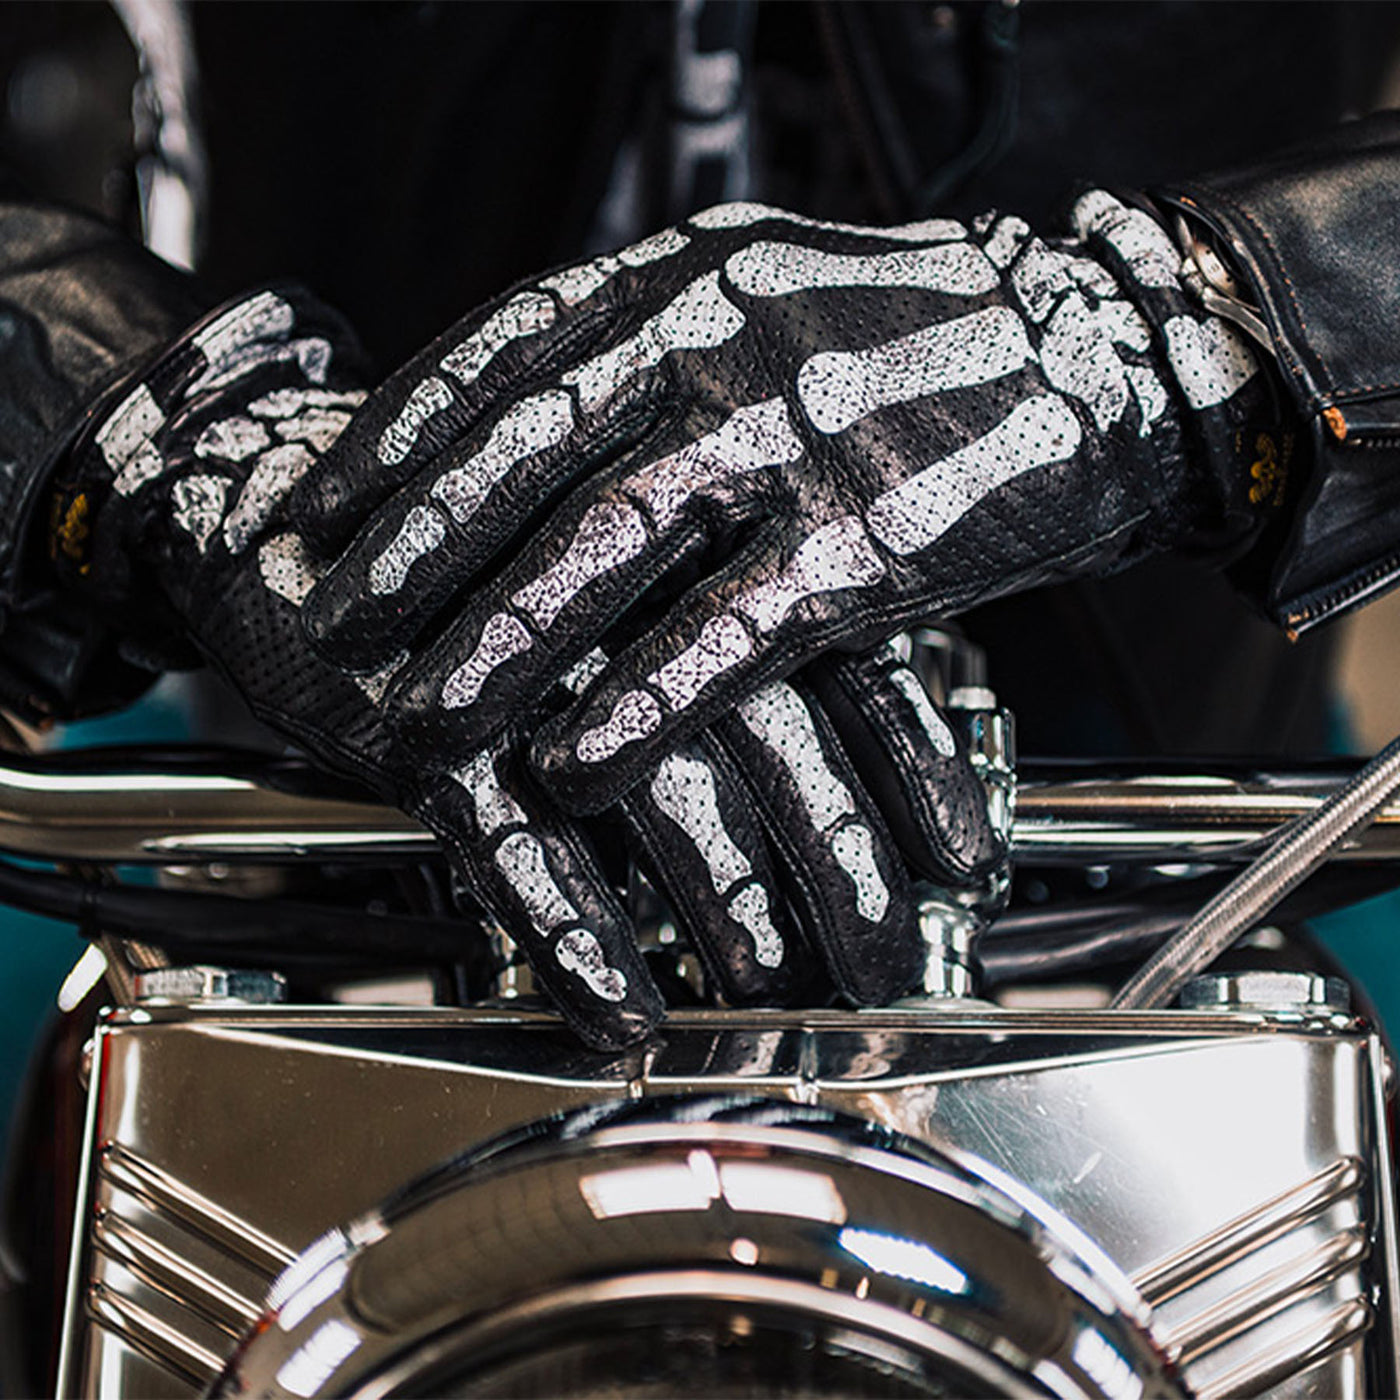 Rude Riders gants moto Bones Noir